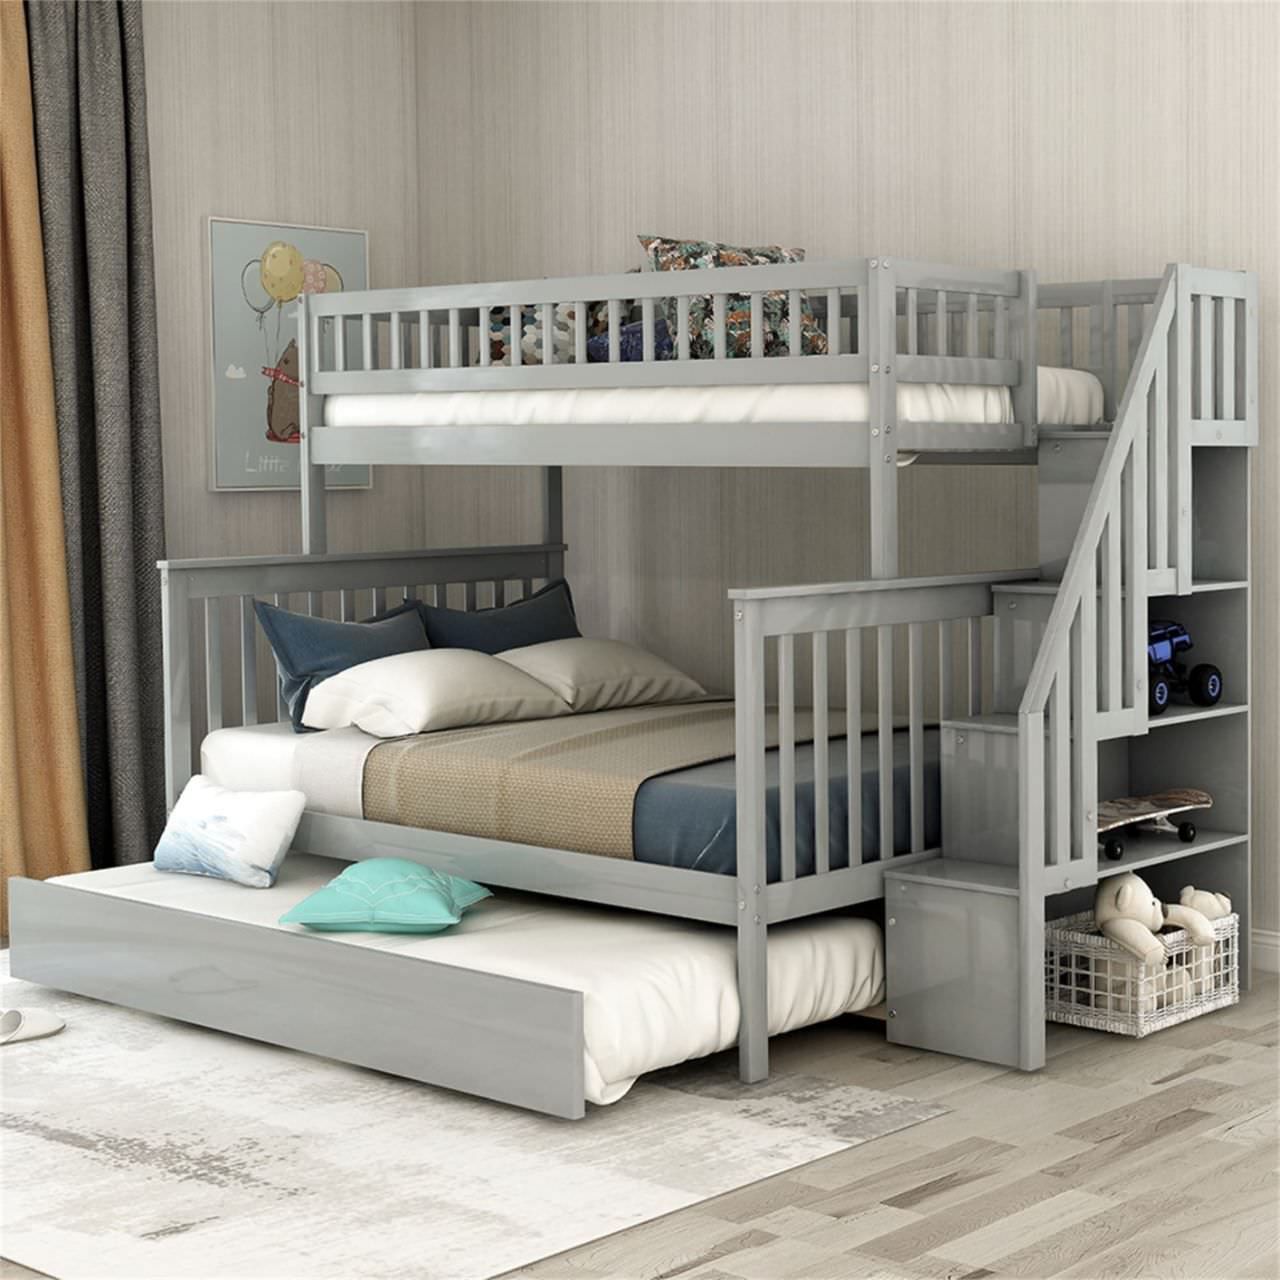 Giường ngủ 2 tầng thông minh có giường phụ và kệ để đồ chơi giúp tối ưu không gian phòng ngủ cho bé